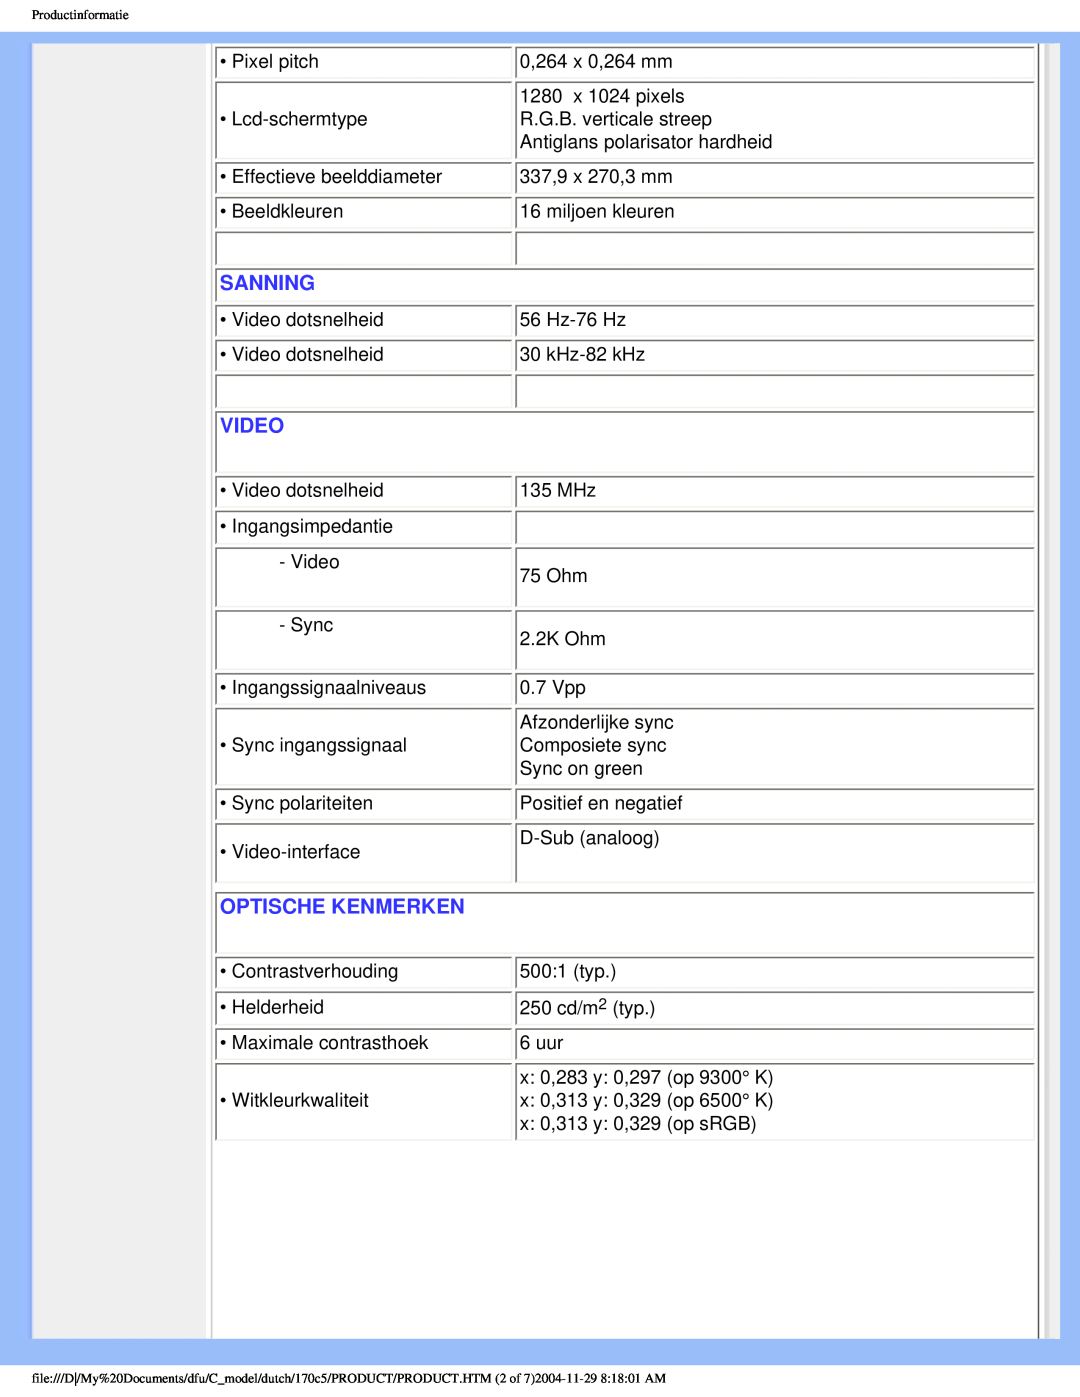 Philips 170C5 user manual Sanning, Video, Optische Kenmerken 